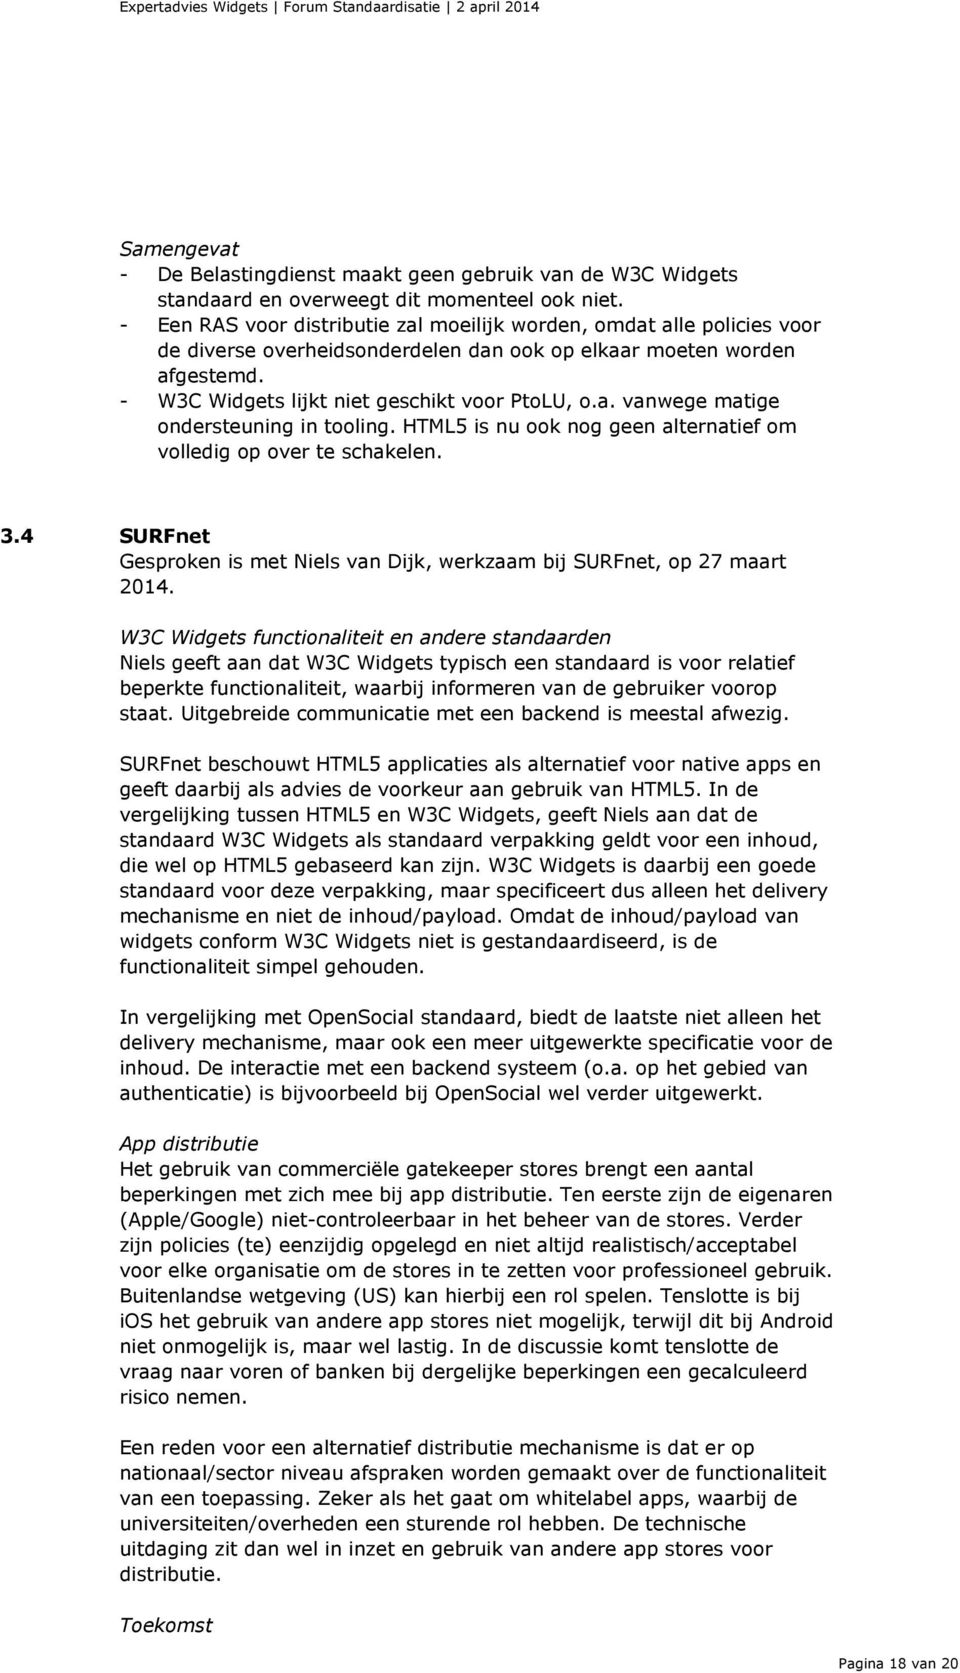 HTML5 is nu ook nog geen alternatief om volledig op over te schakelen. 3.4 SURFnet Gesproken is met Niels van Dijk, werkzaam bij SURFnet, op 27 maart 2014.